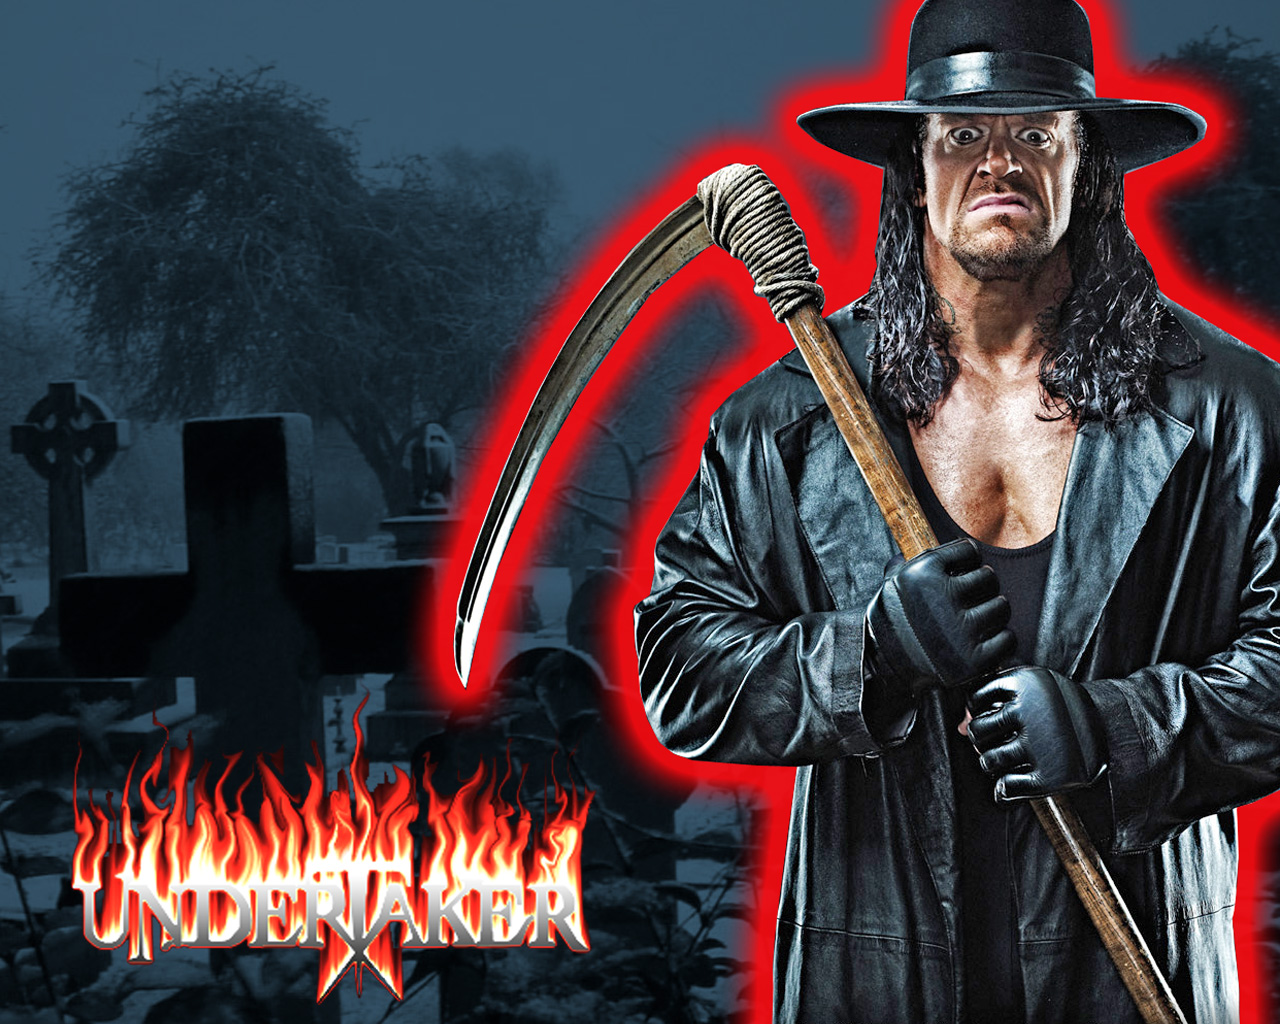 Road to WrestleMania 34: John Cena vs. The Undertaker poster & wallpaper! -  Kupy Wrestling Wallpapers